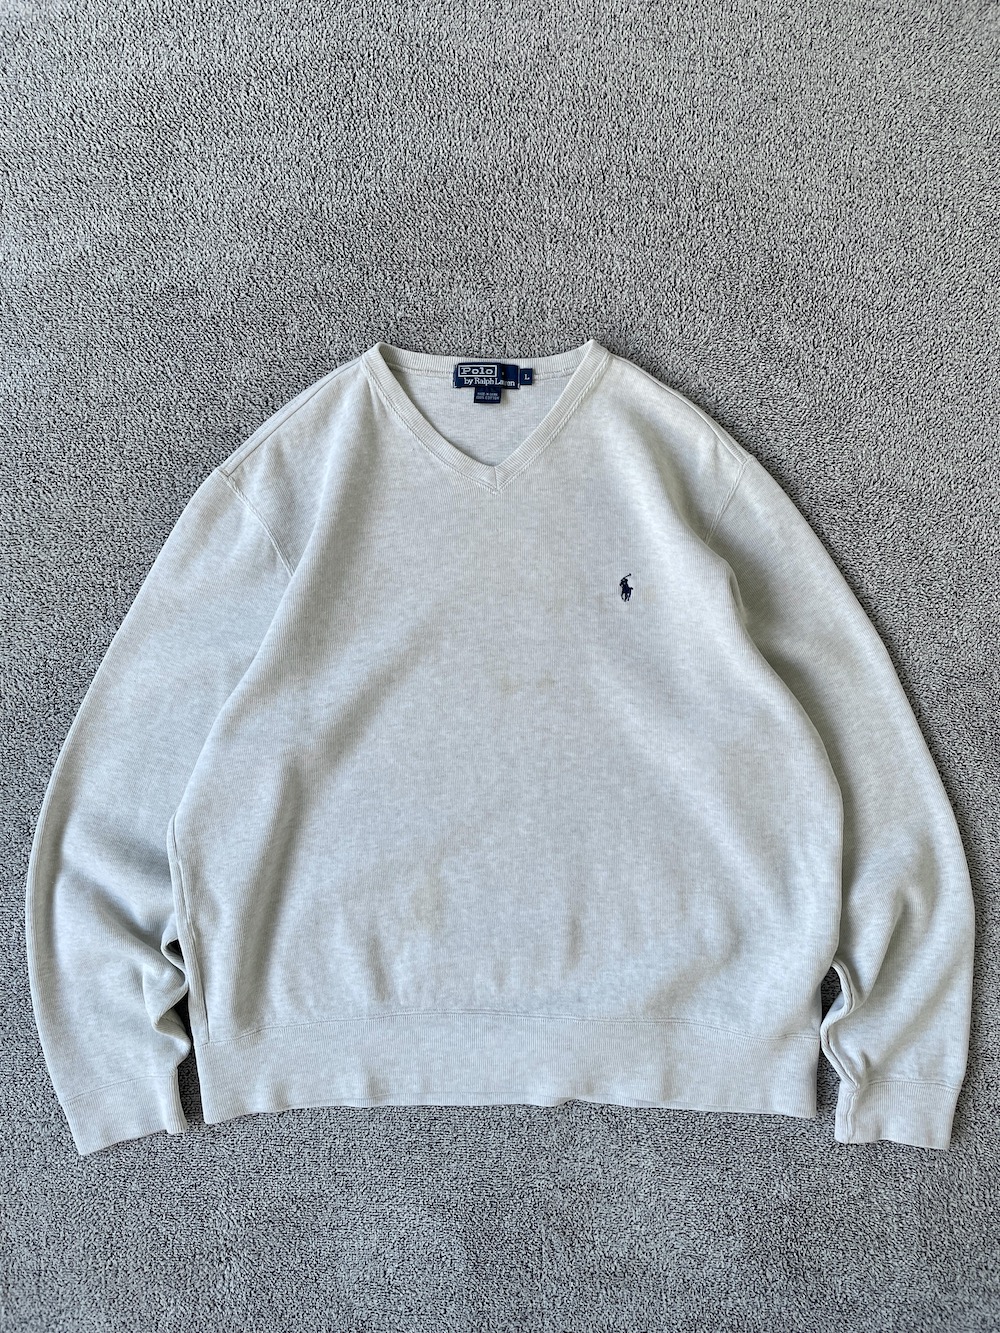 [ L ] Polo Ralph Lauren Sweatshirt (6427)